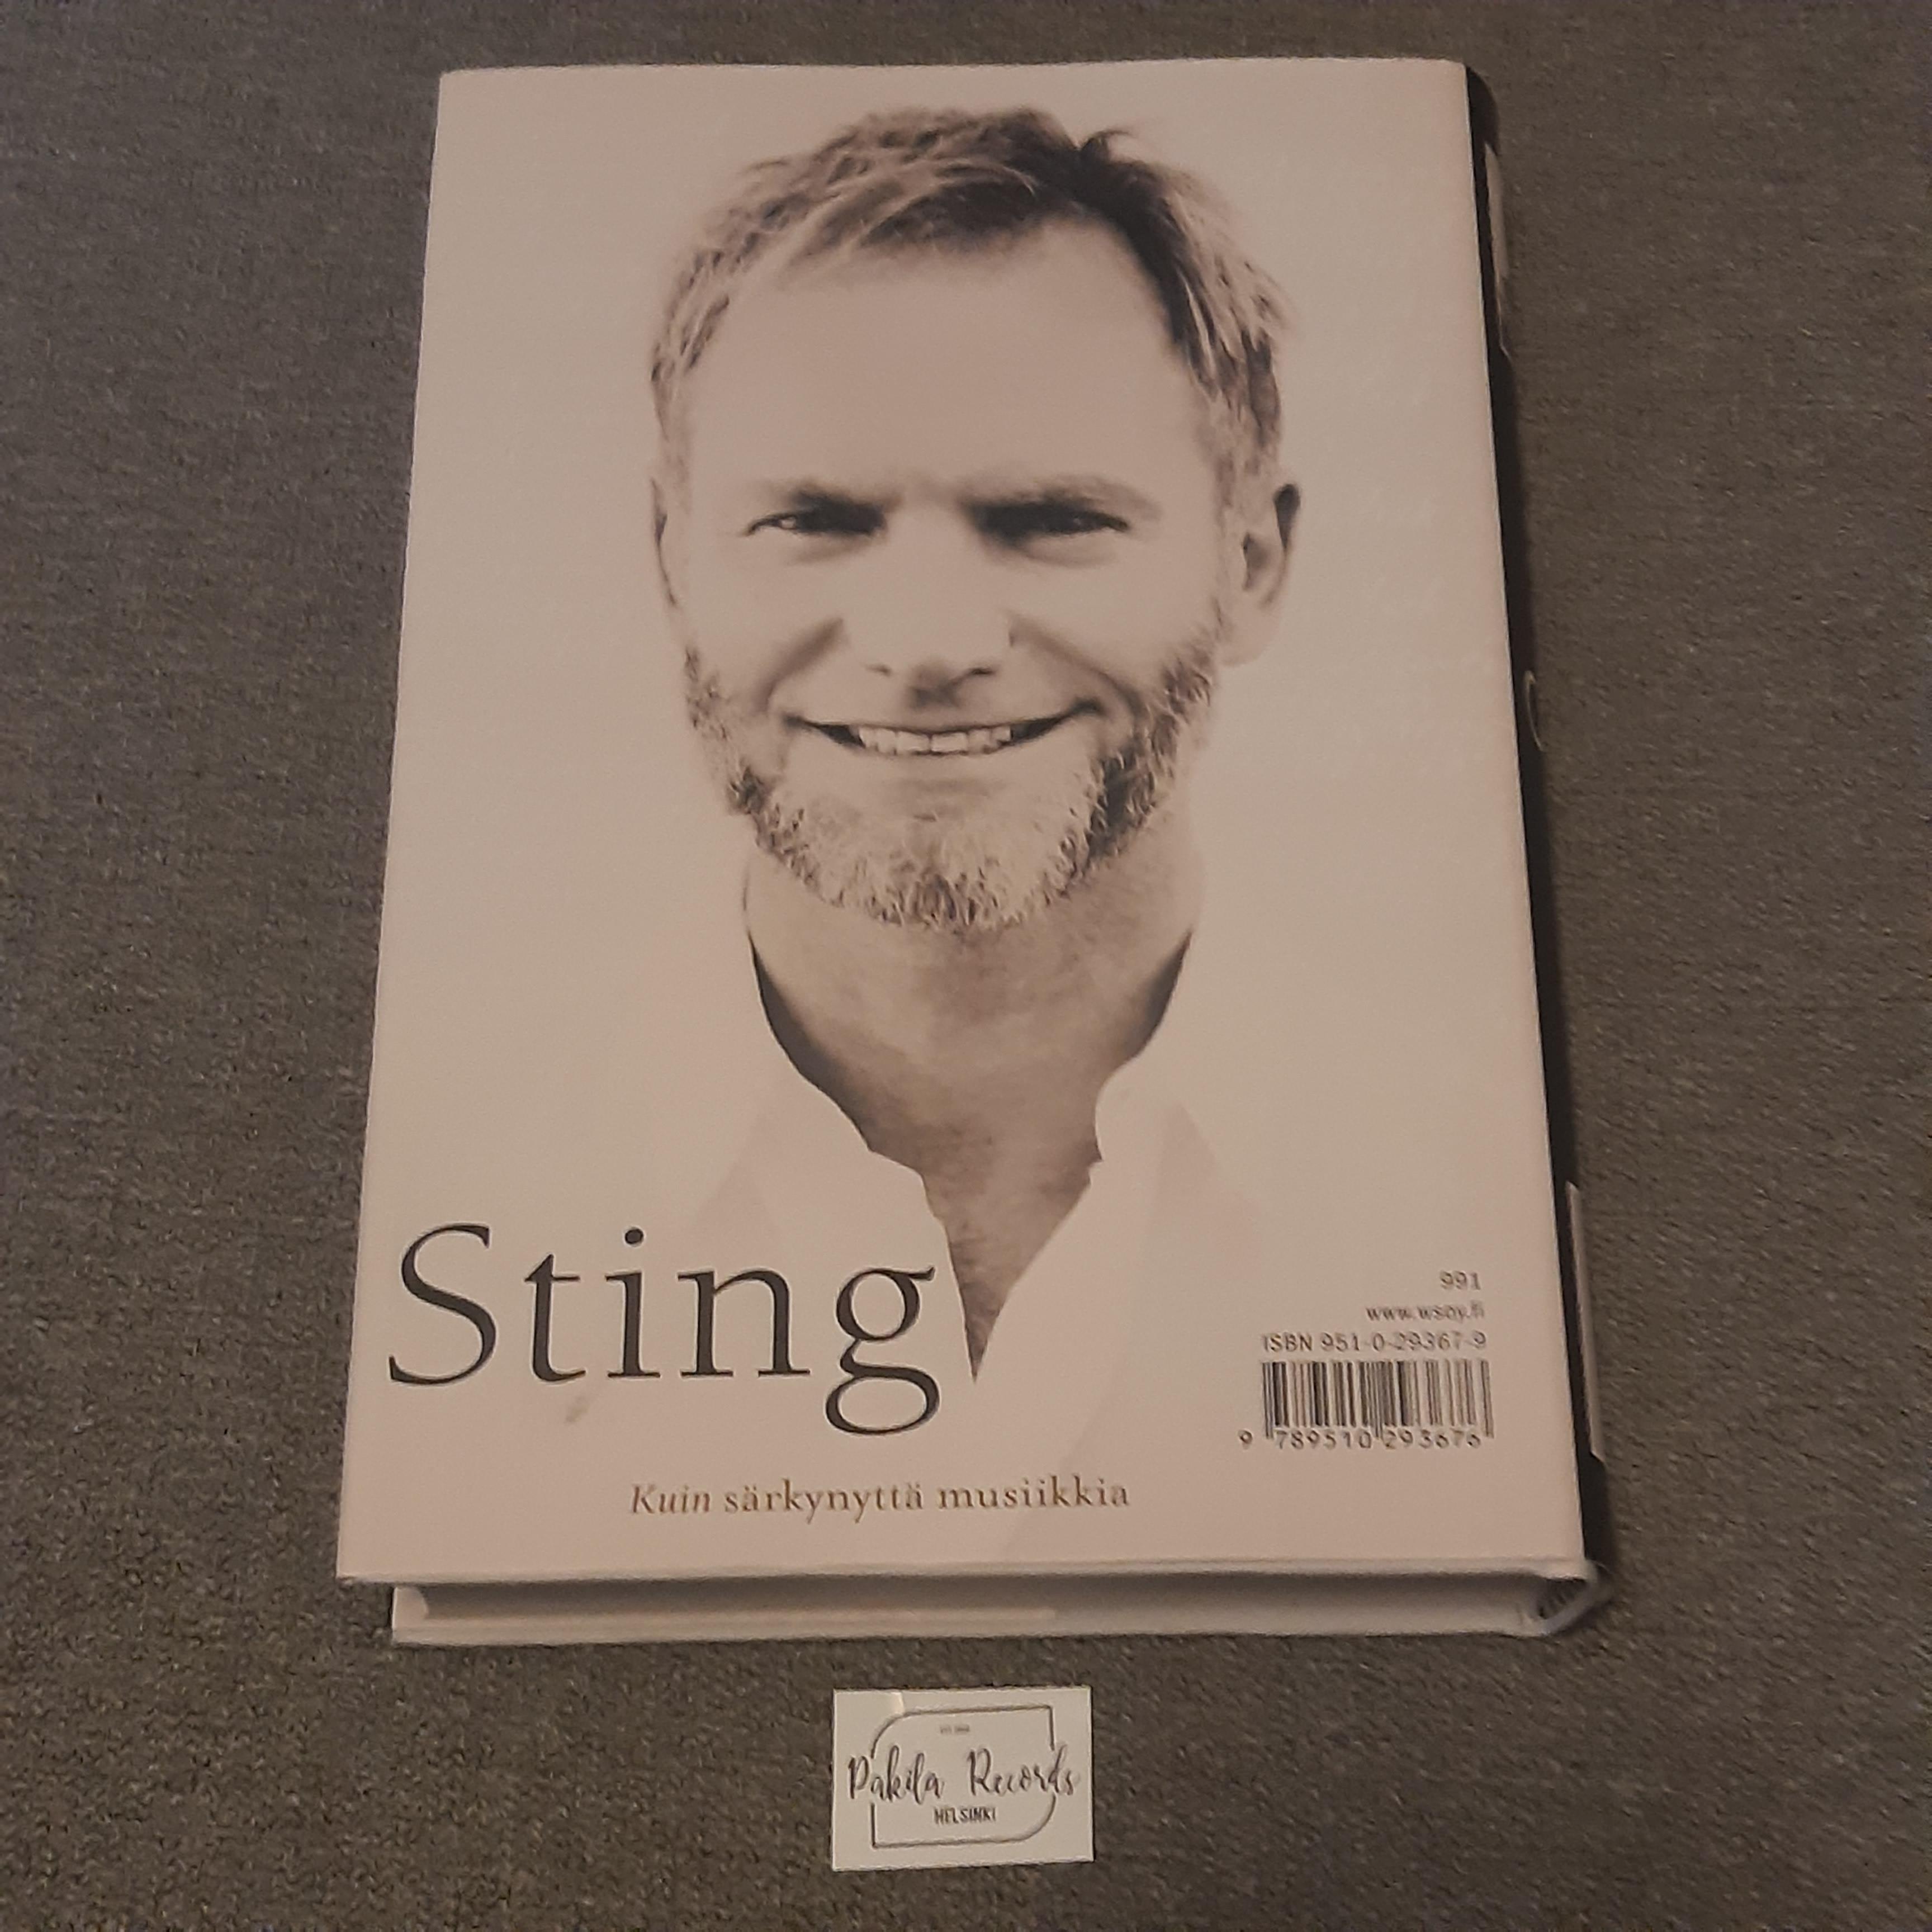 Sting, Kuin särkynyttä musiikkia - Kirja (käytetty)